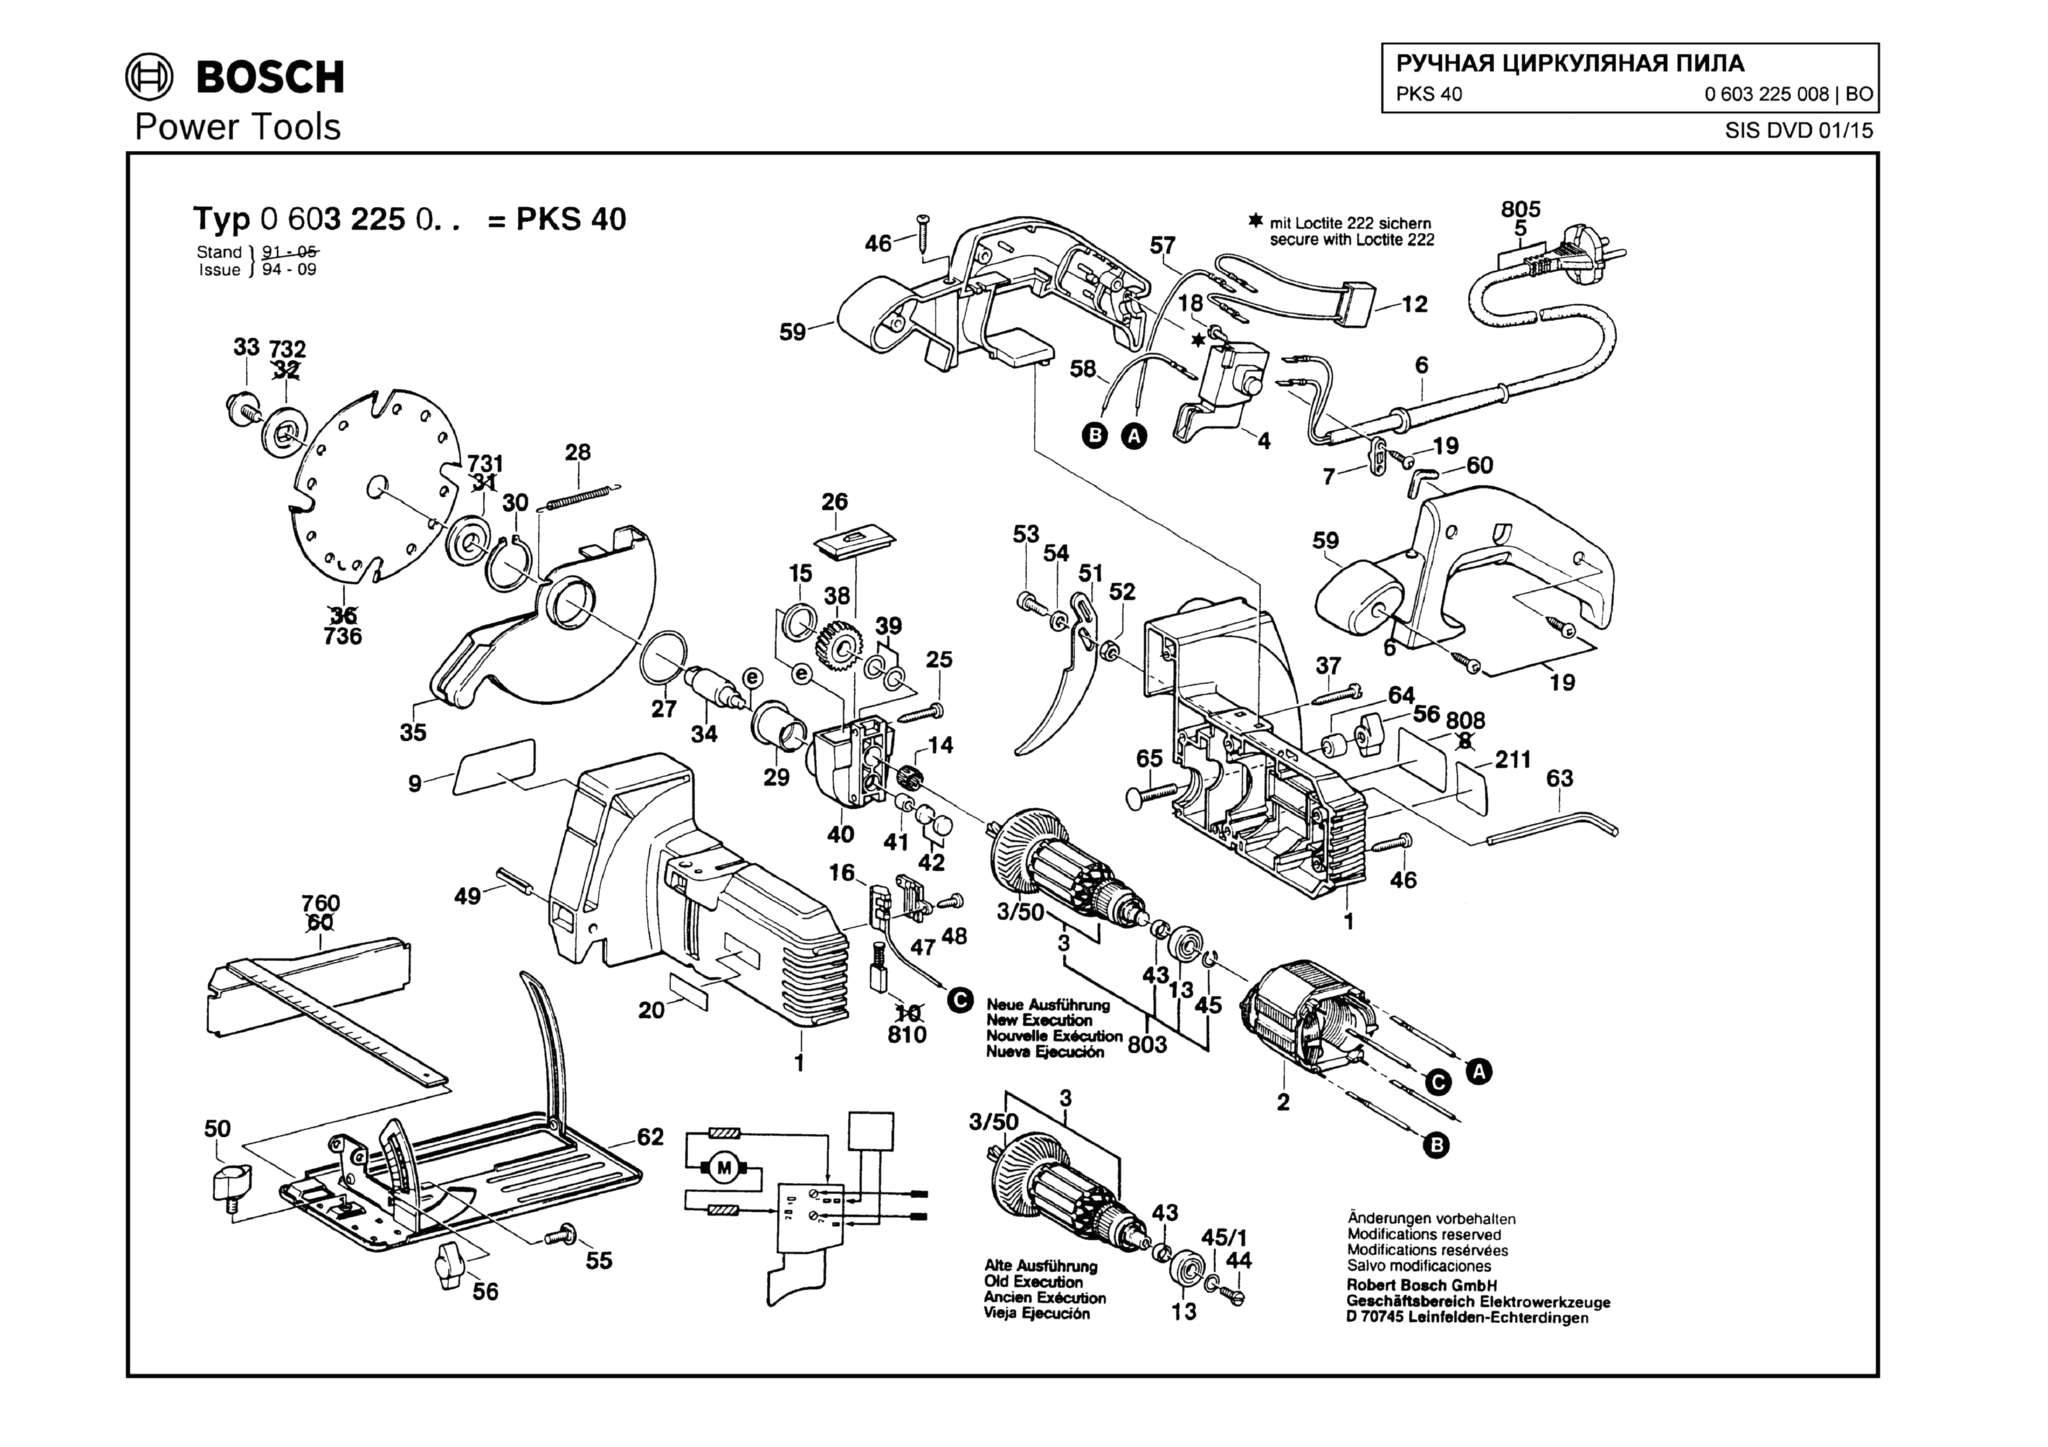 Запчасти, схема и деталировка Bosch PKS 40 (ТИП 0603225008)